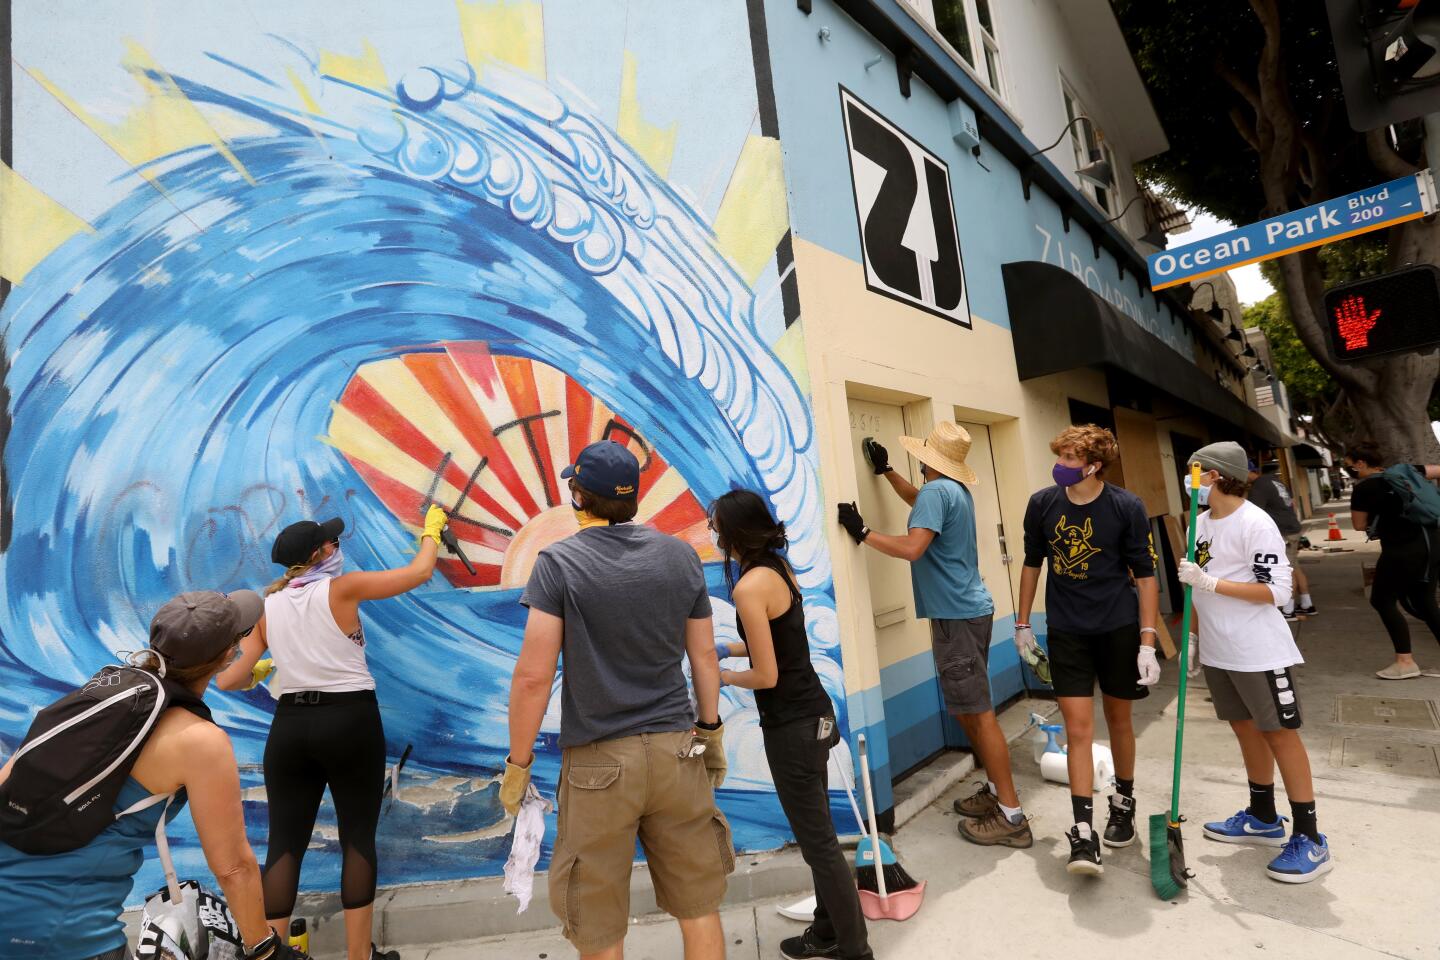 Volunteers help clean up graffiti in Santa Monica.